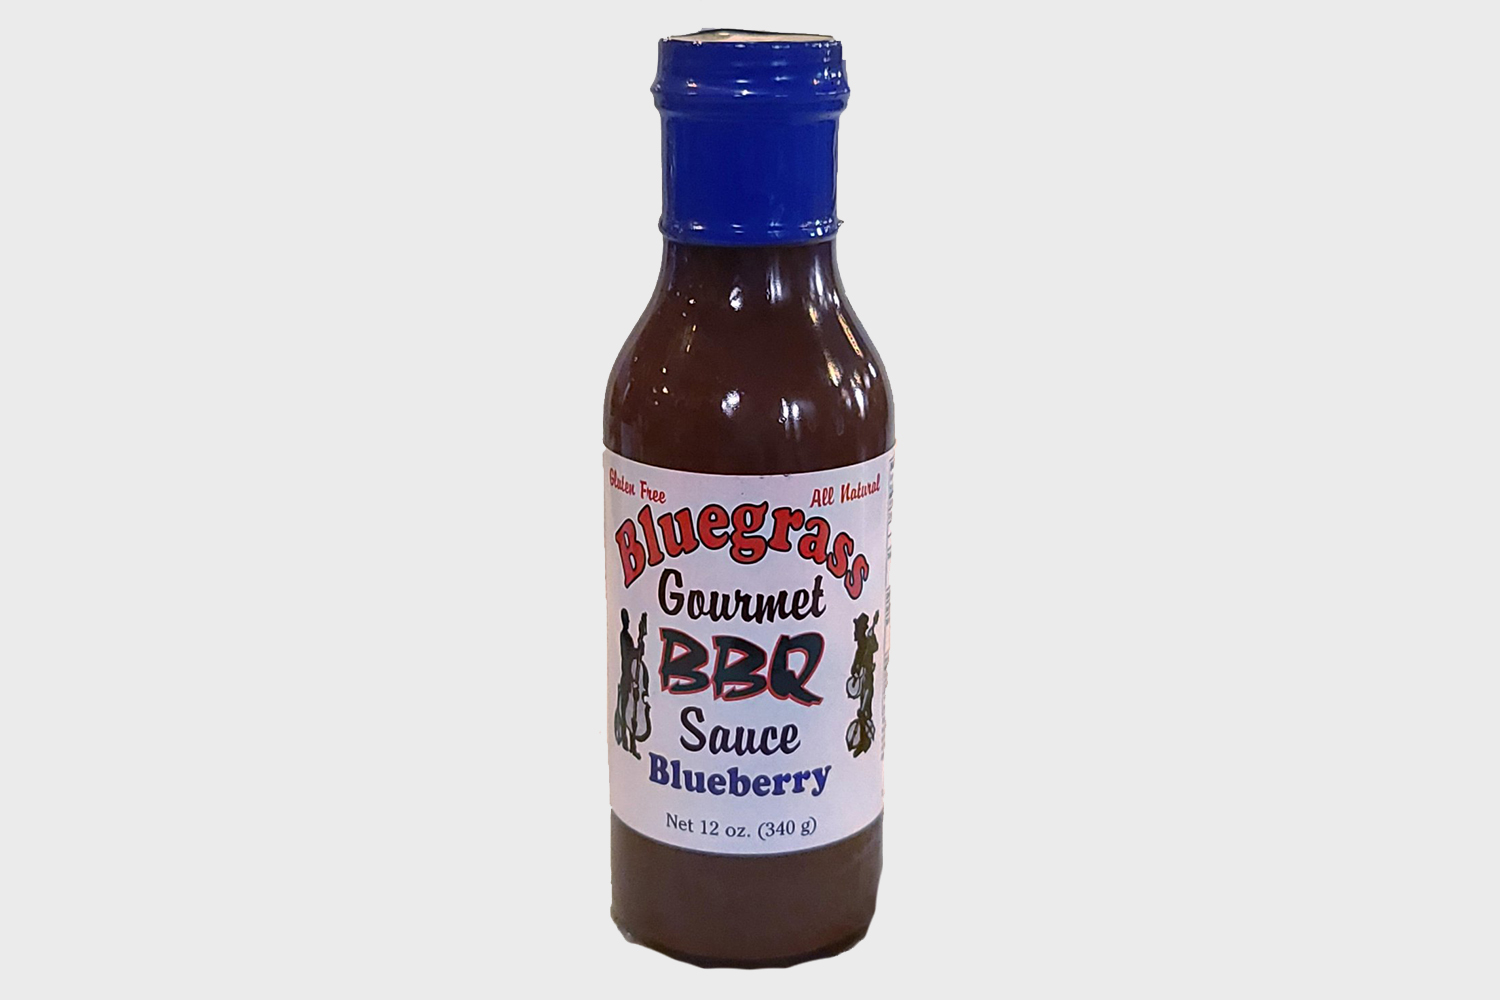 Bluegrass BBQ Sauce Blueberry